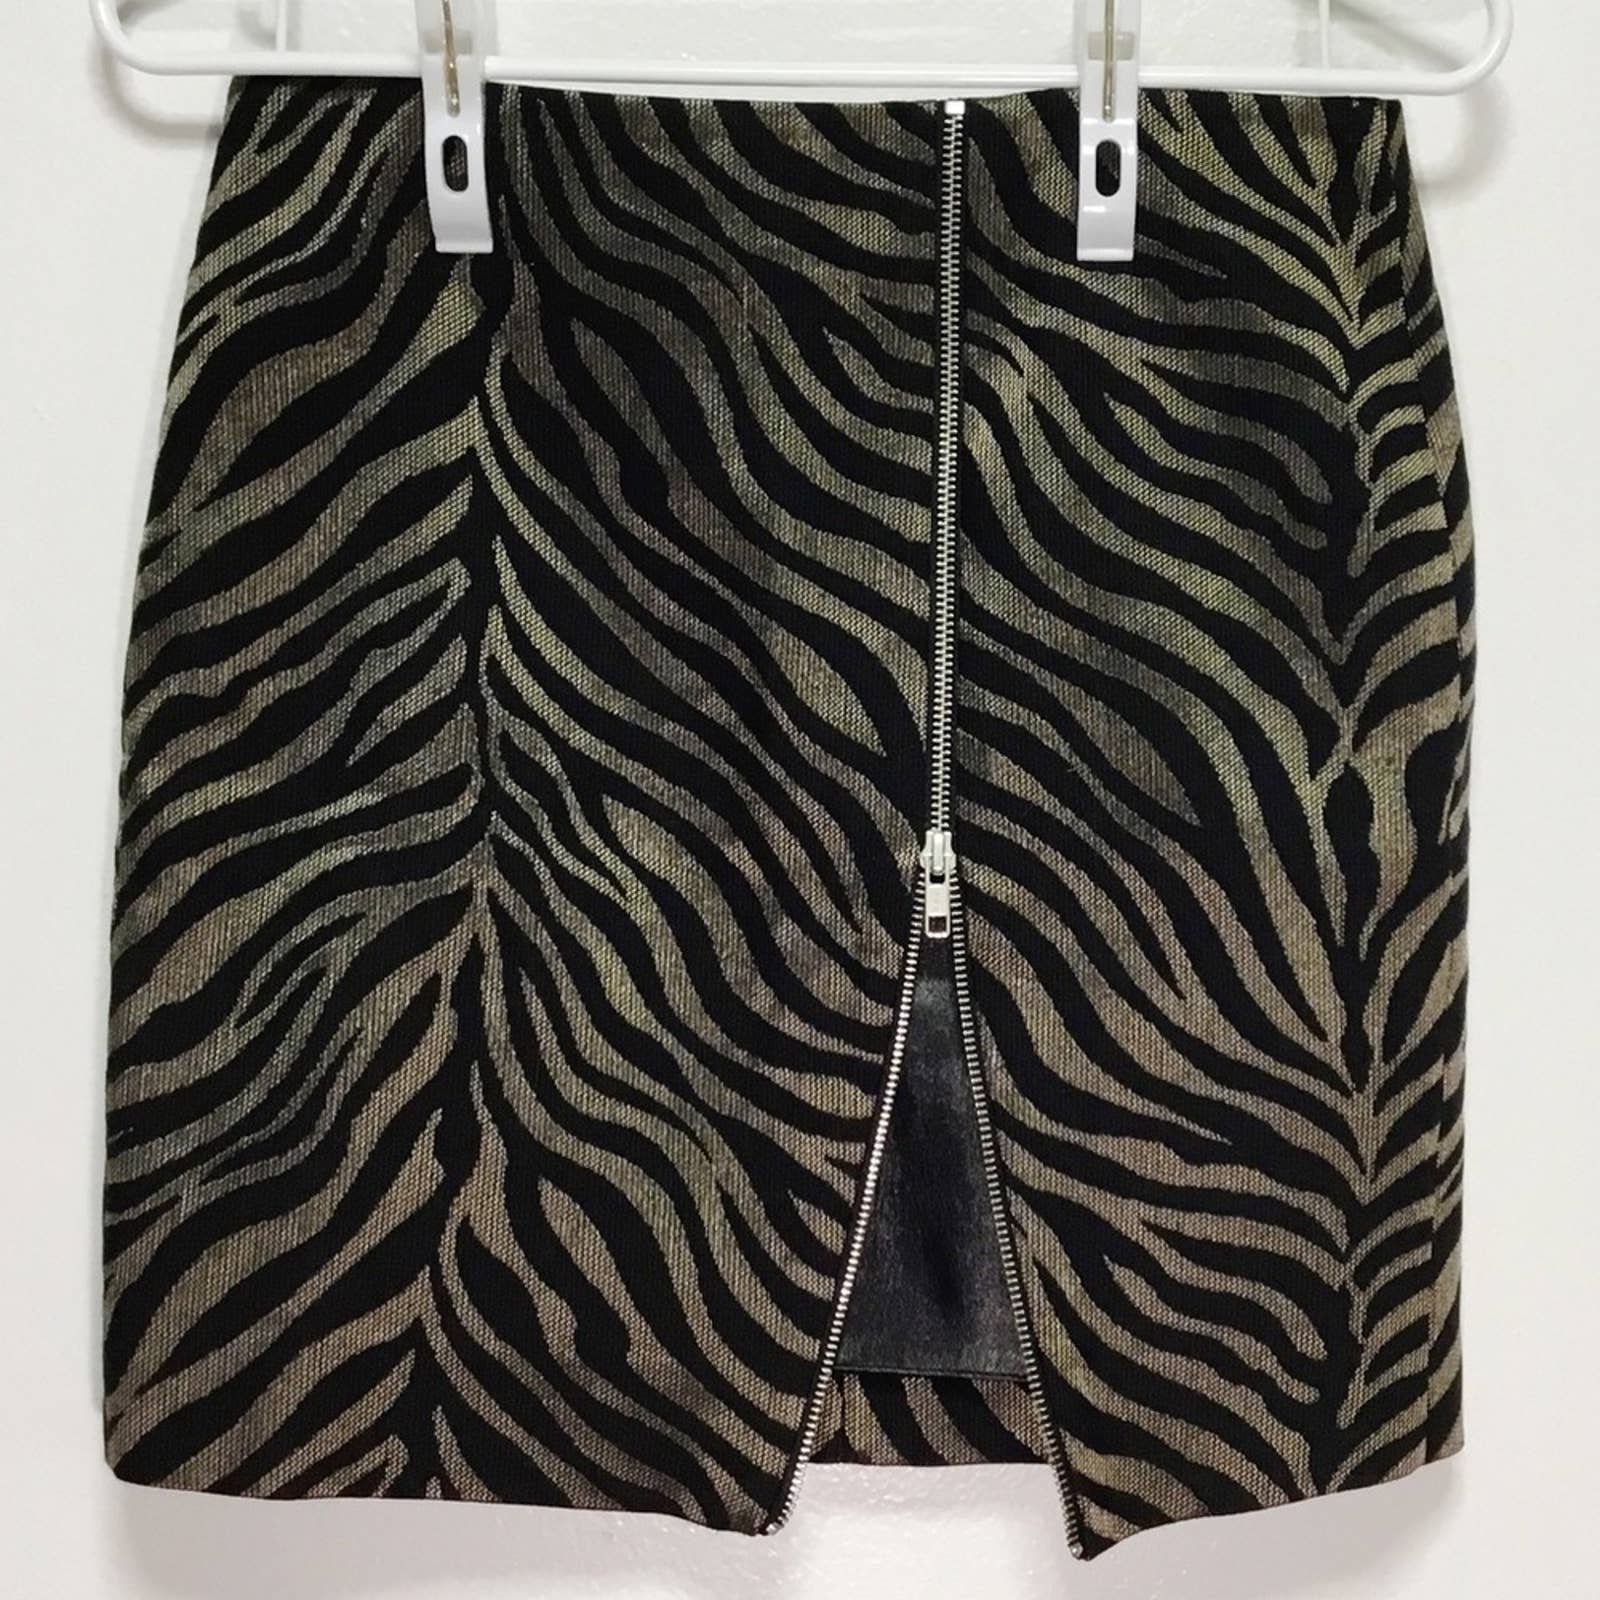 Beautiful The Kooples Tiger Zipper Mini Skirt hFTPX5z0w Great